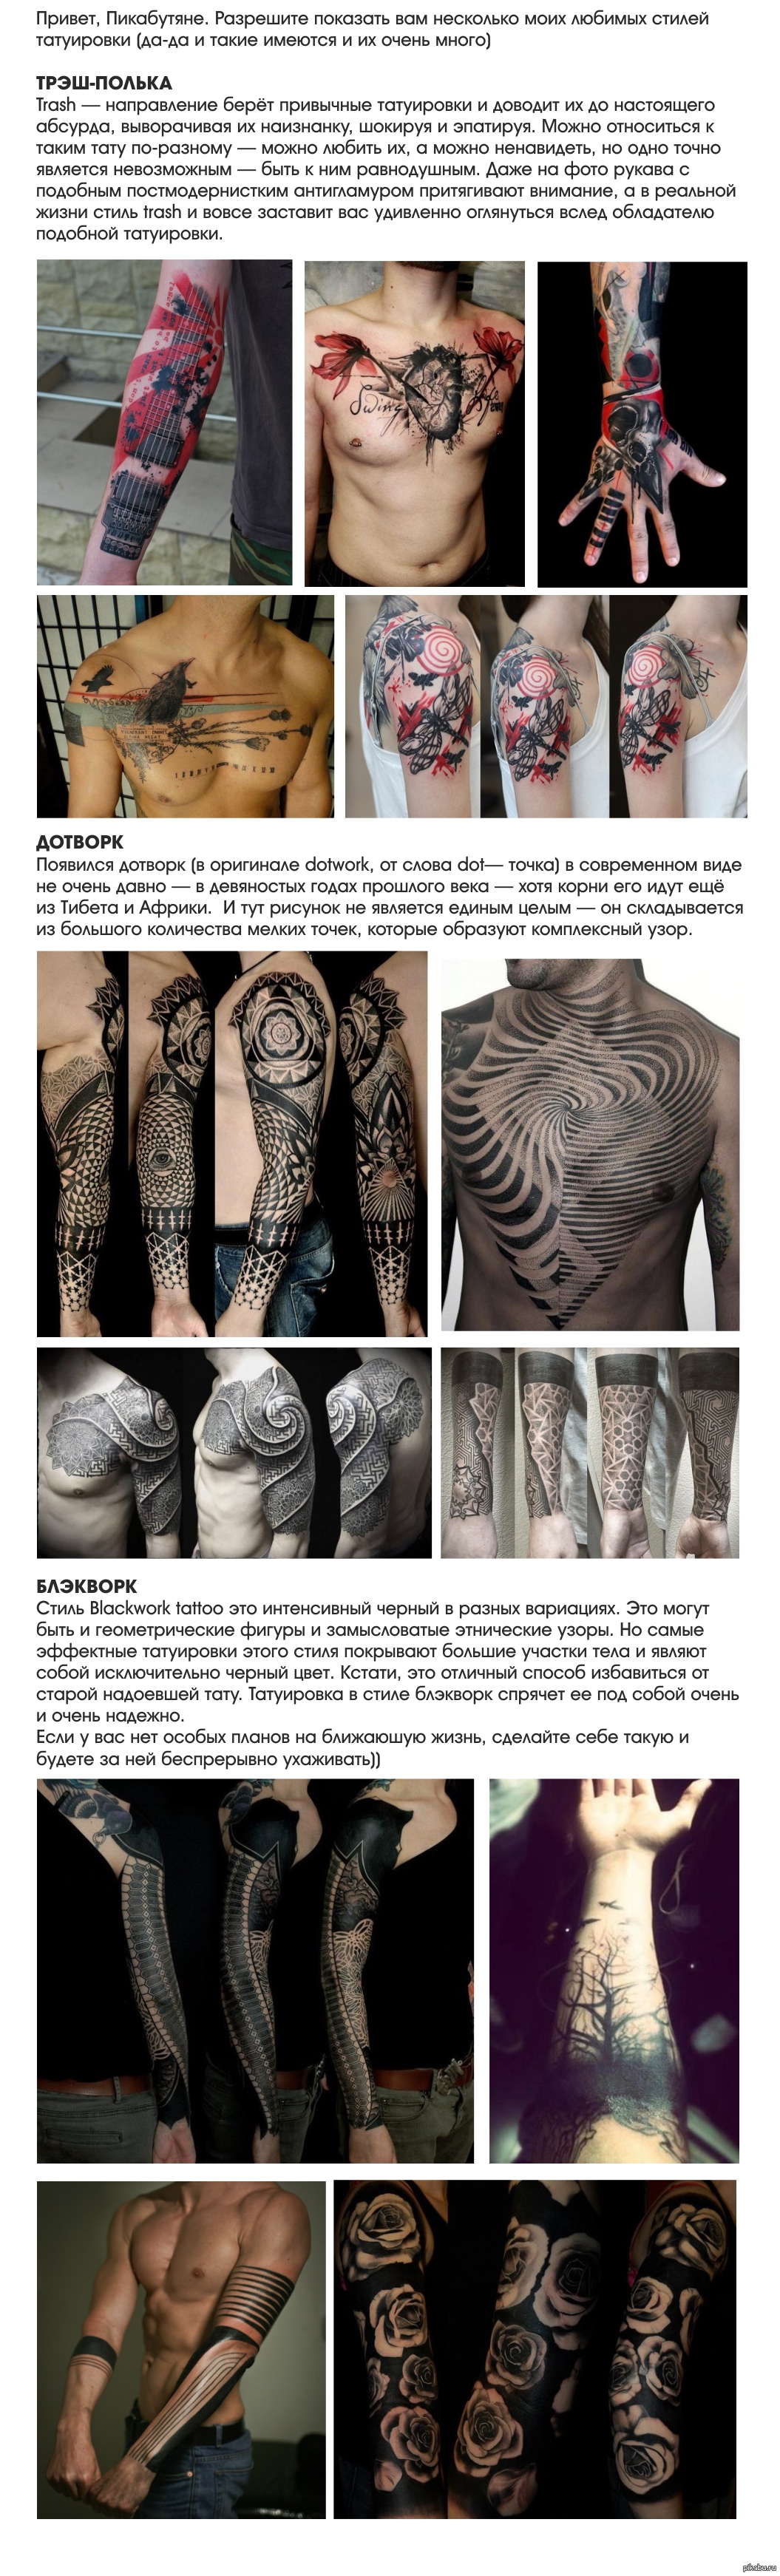 какие стили татуировок